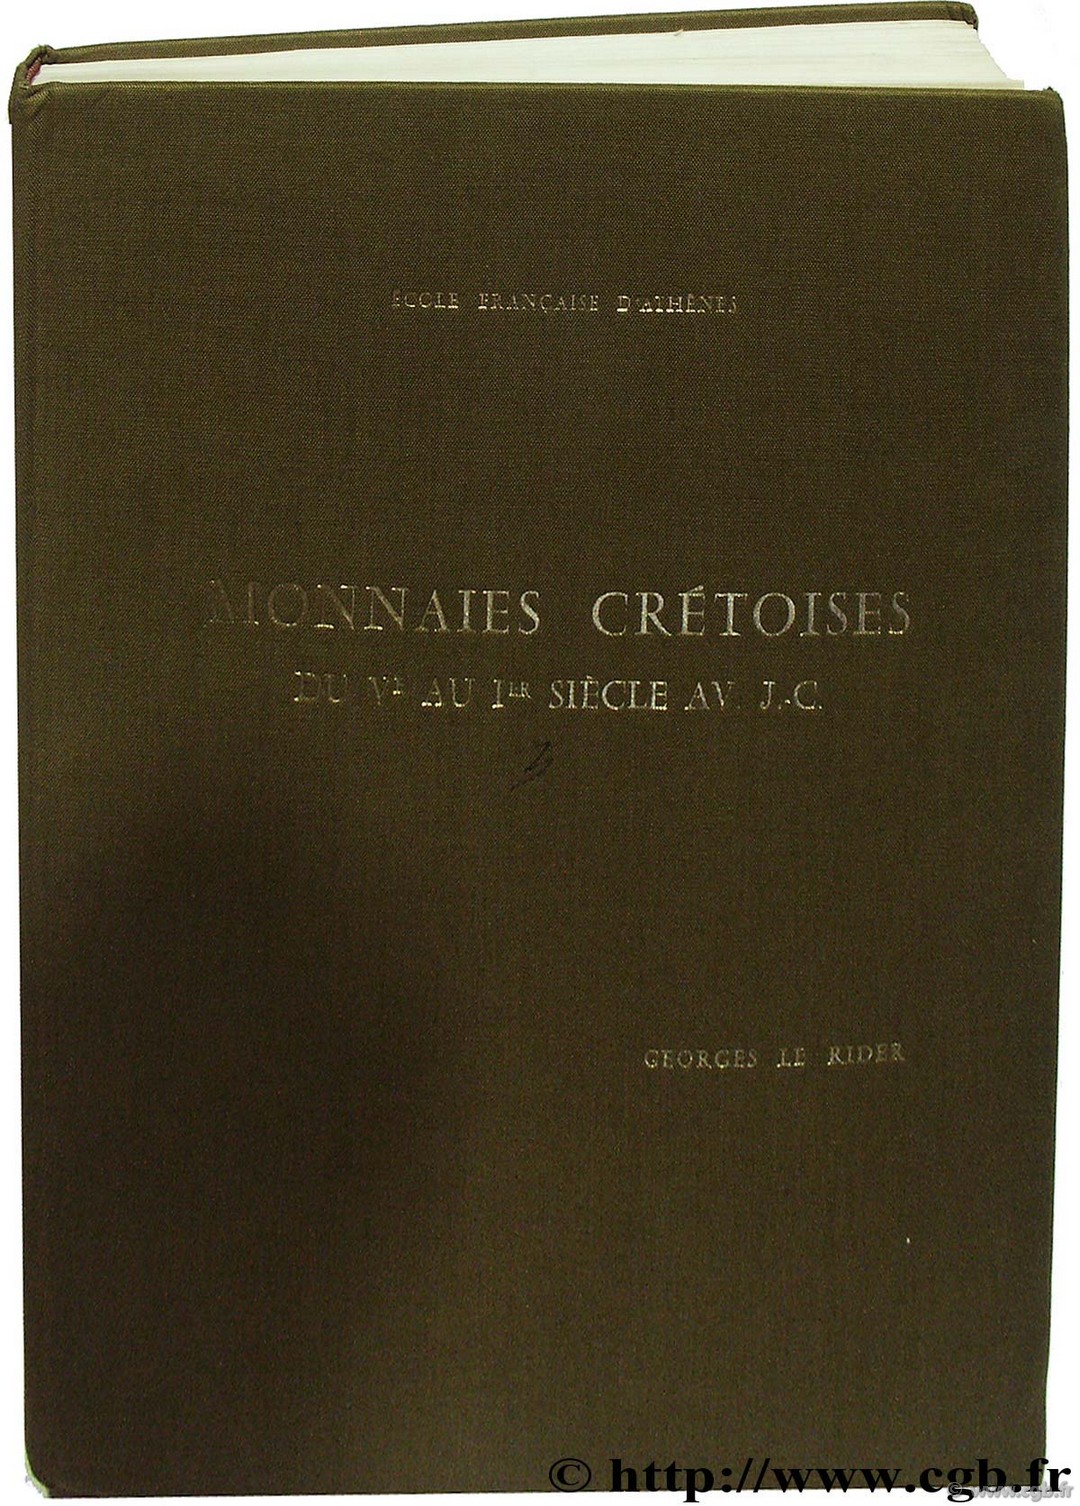 Monnaies crétoises du Vème au Ier siècle av. J.-C., École Française d Athènes XV LE RIDER G.